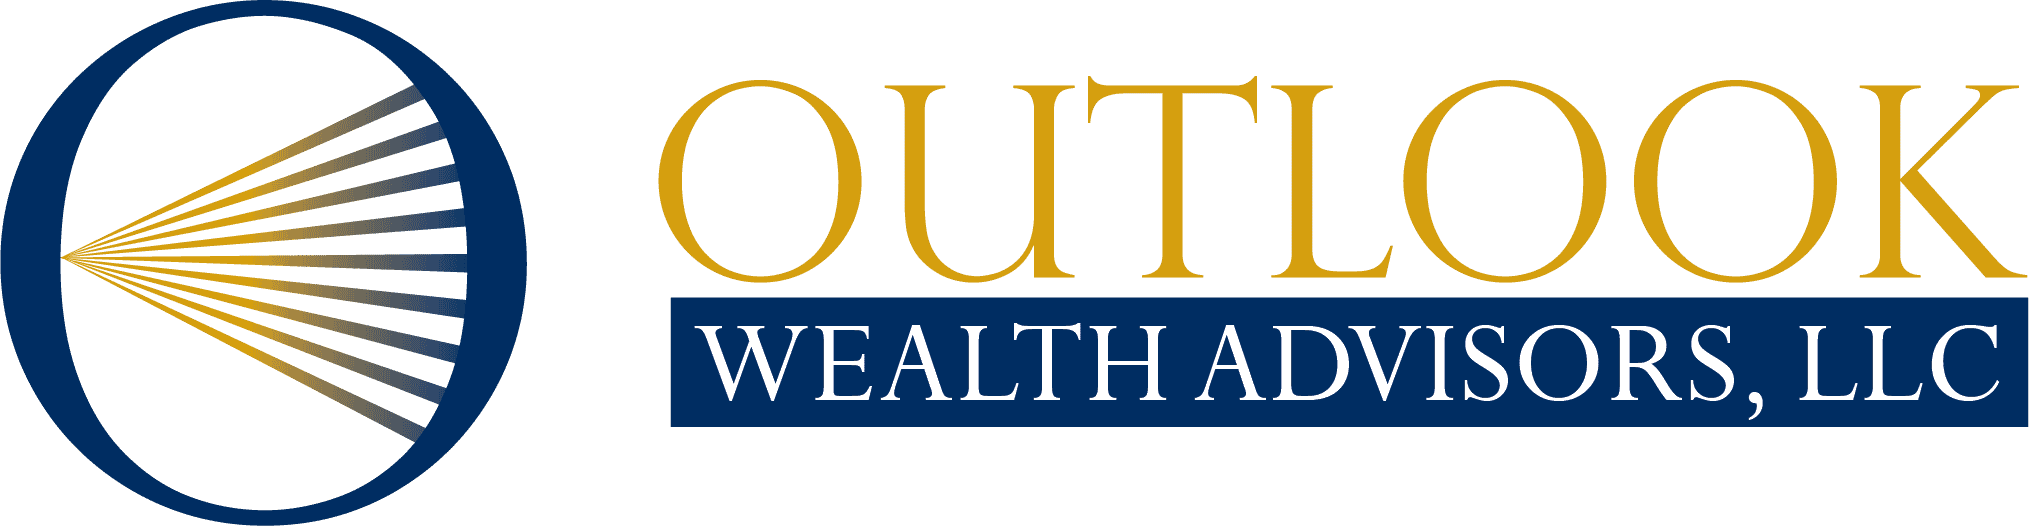 Outlook Wealth Advisors